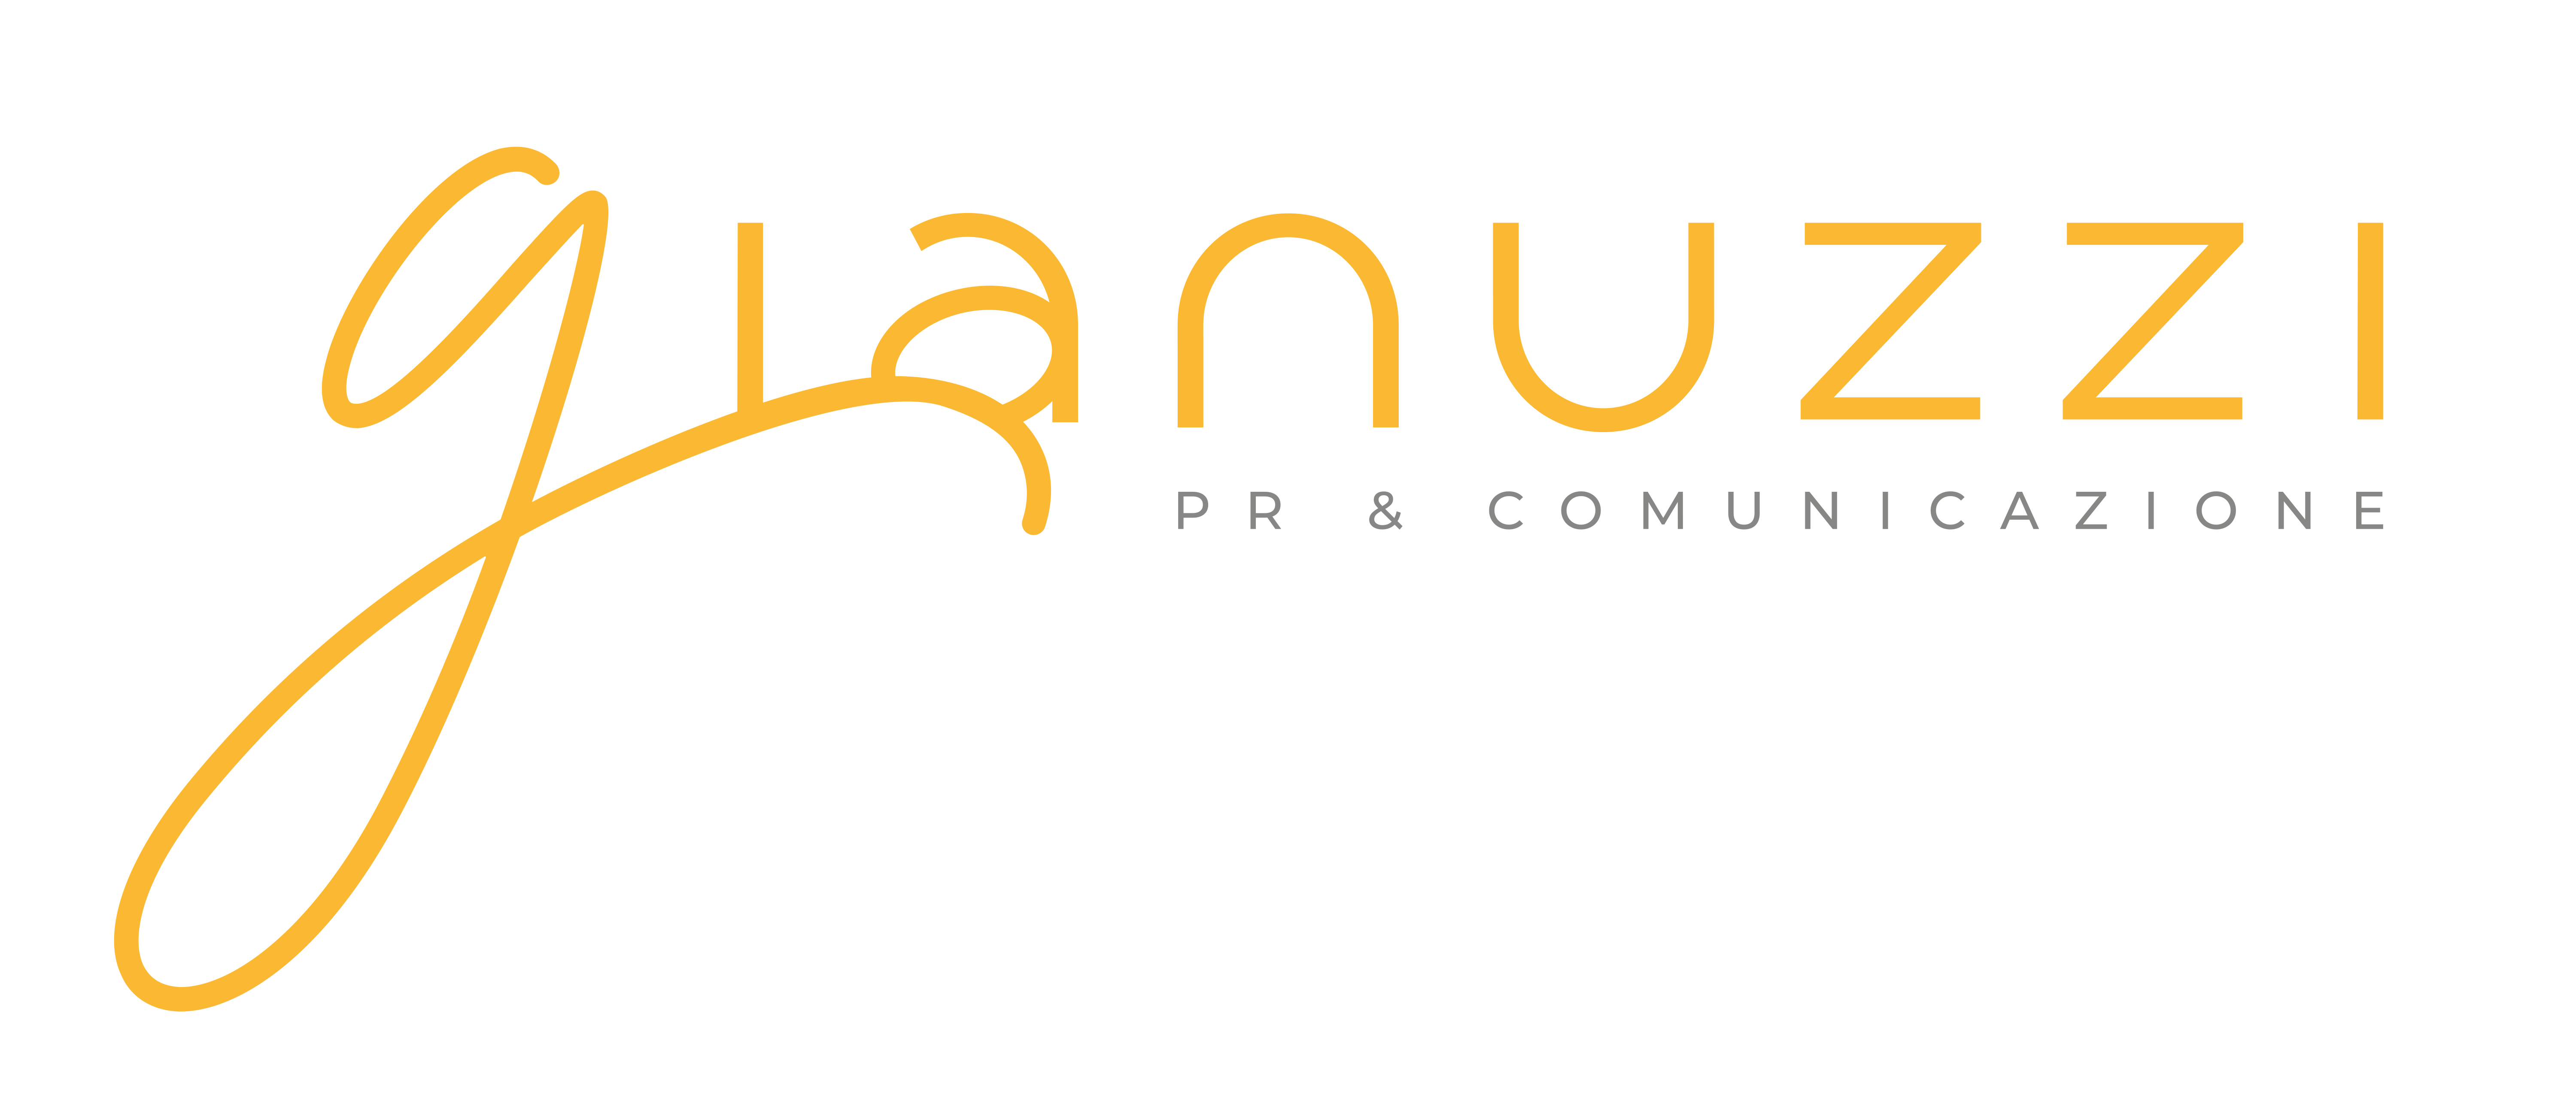 Gianuzzi PR & Comunicazione